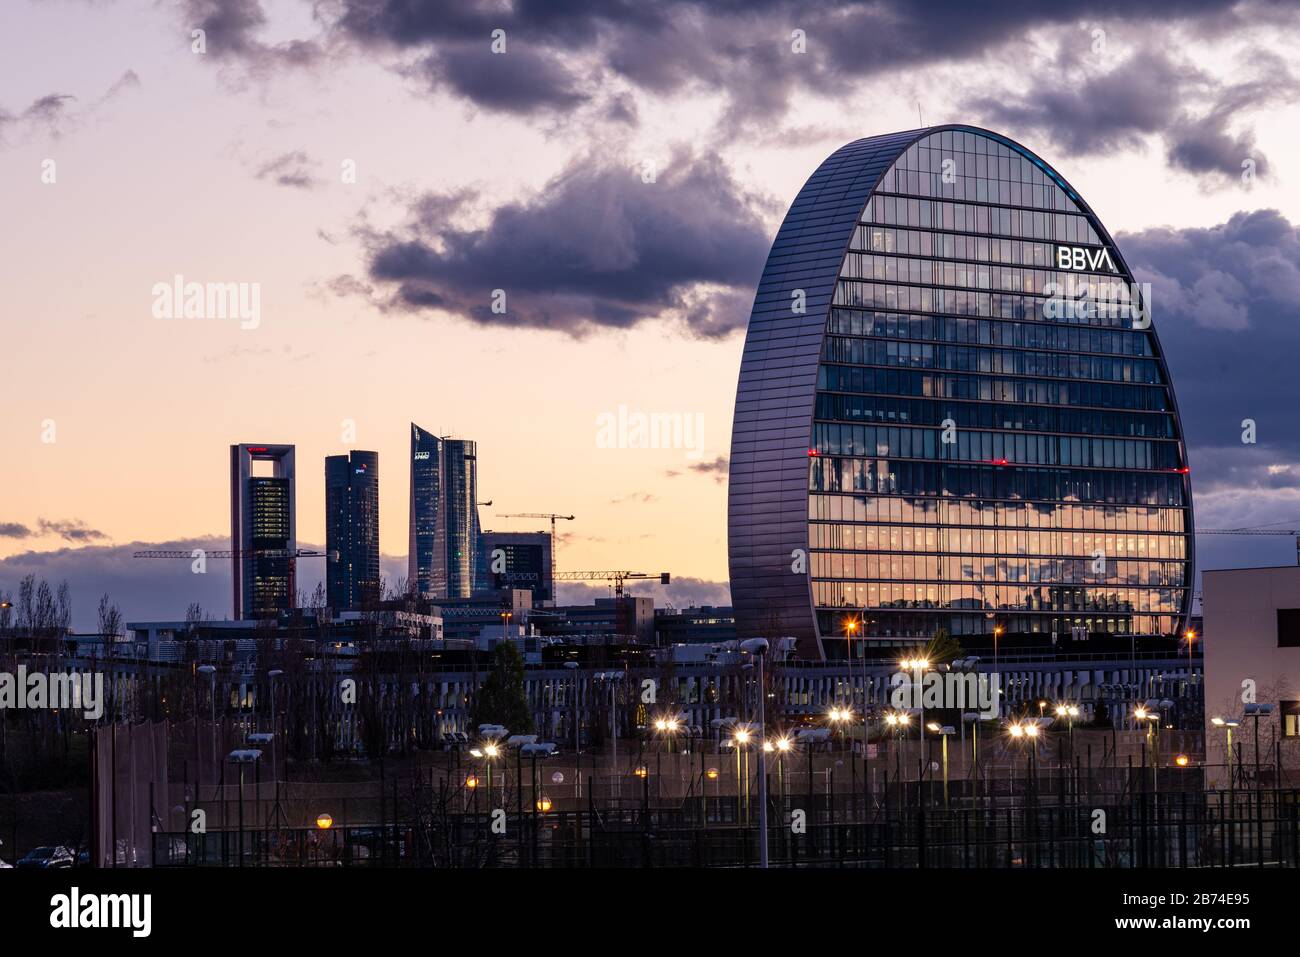 Madrid, Spagna - 7 marzo 2020: Vista dello skyline di Madrid con il quartiere residenziale Las Tablas, l'edificio degli uffici BBVA e Cuatro Torres Financial di Foto Stock